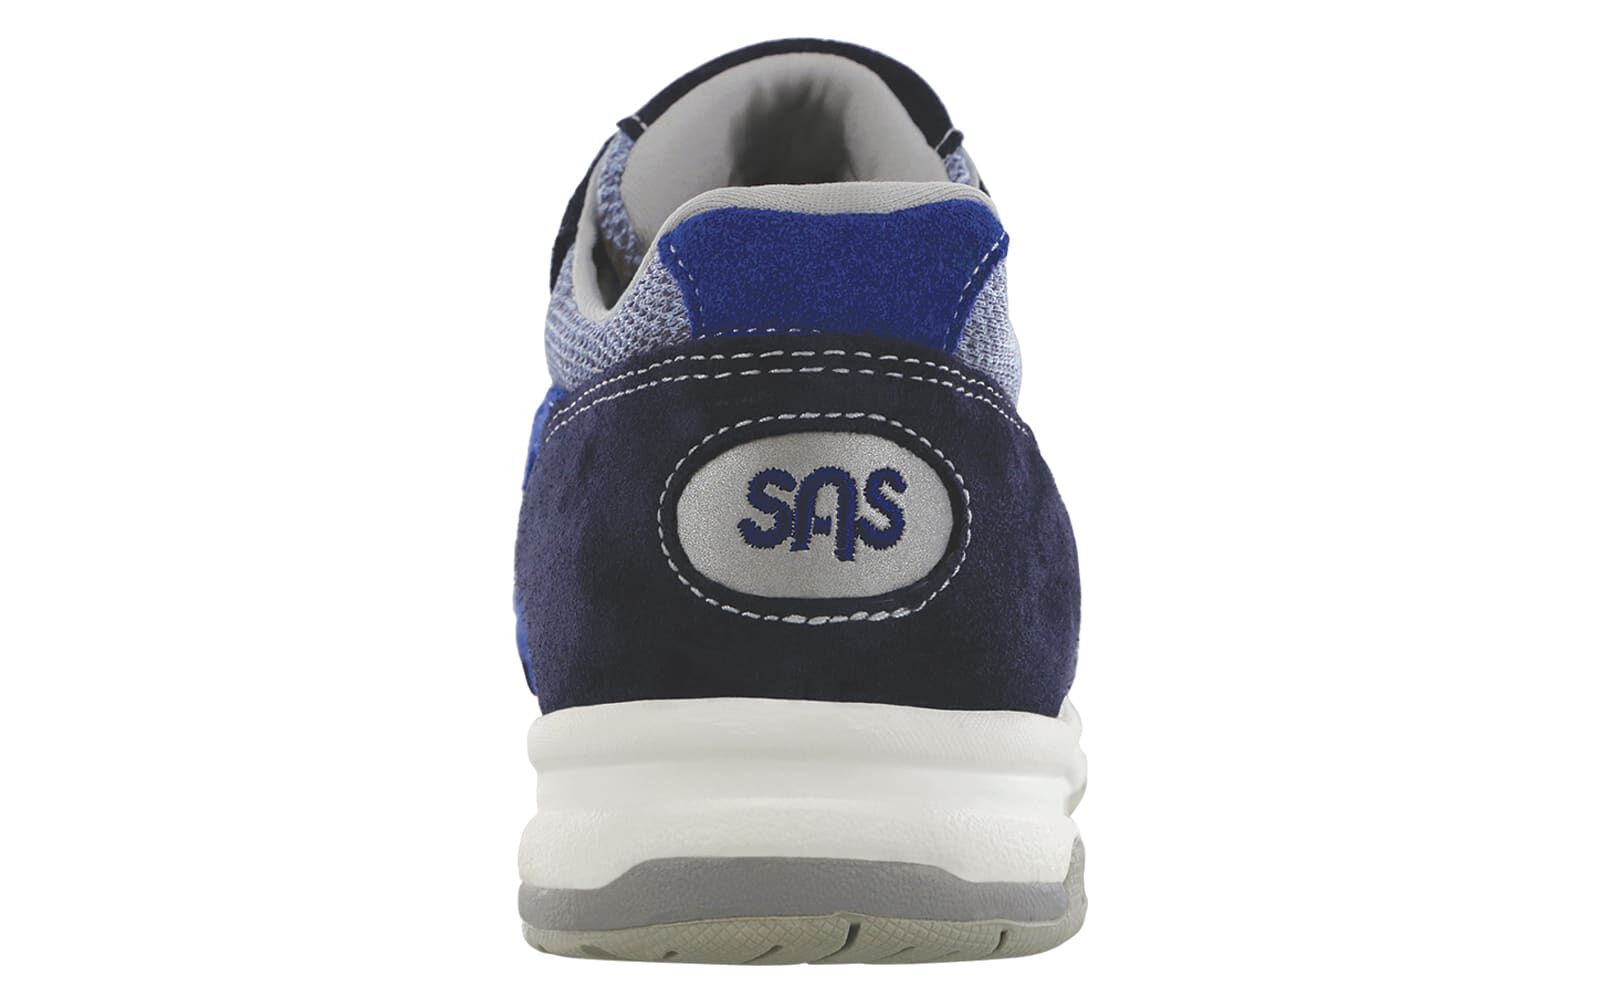 Tour Mesh LT Lace Up Sneaker | SAS Shoes